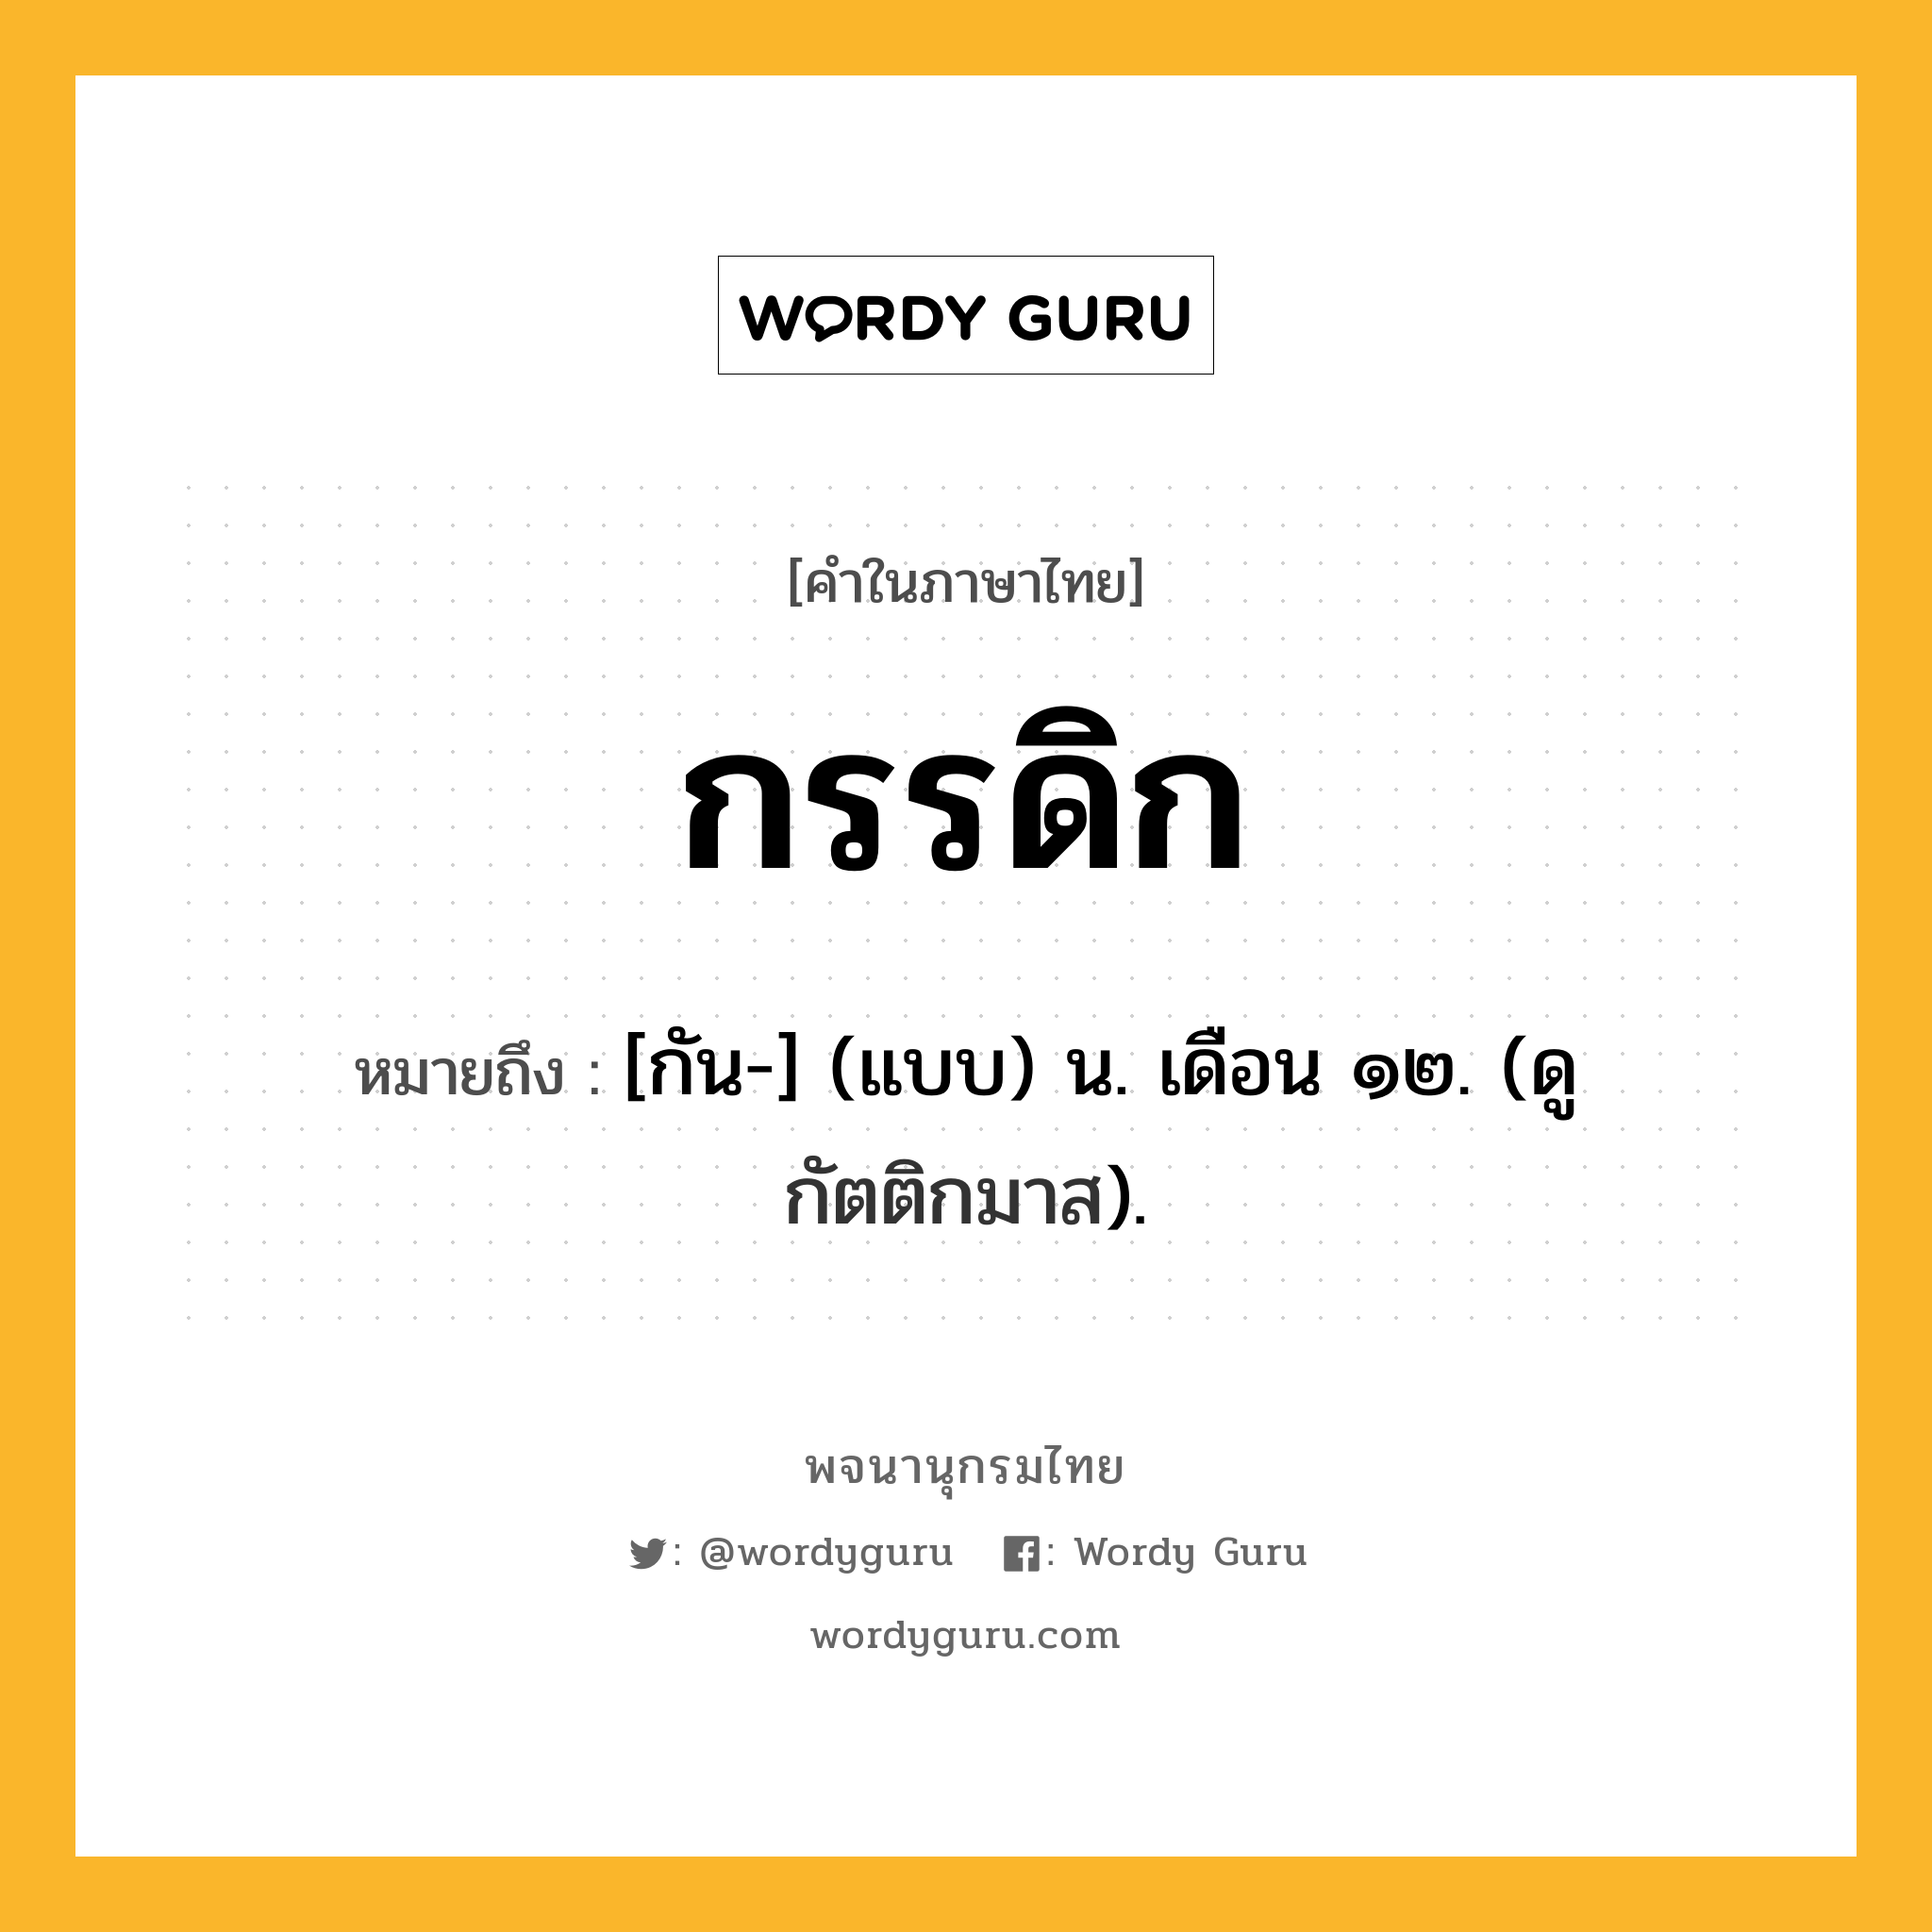 กรรดิก หมายถึงอะไร?, คำในภาษาไทย กรรดิก หมายถึง [กัน-] (แบบ) น. เดือน ๑๒. (ดู กัตติกมาส).